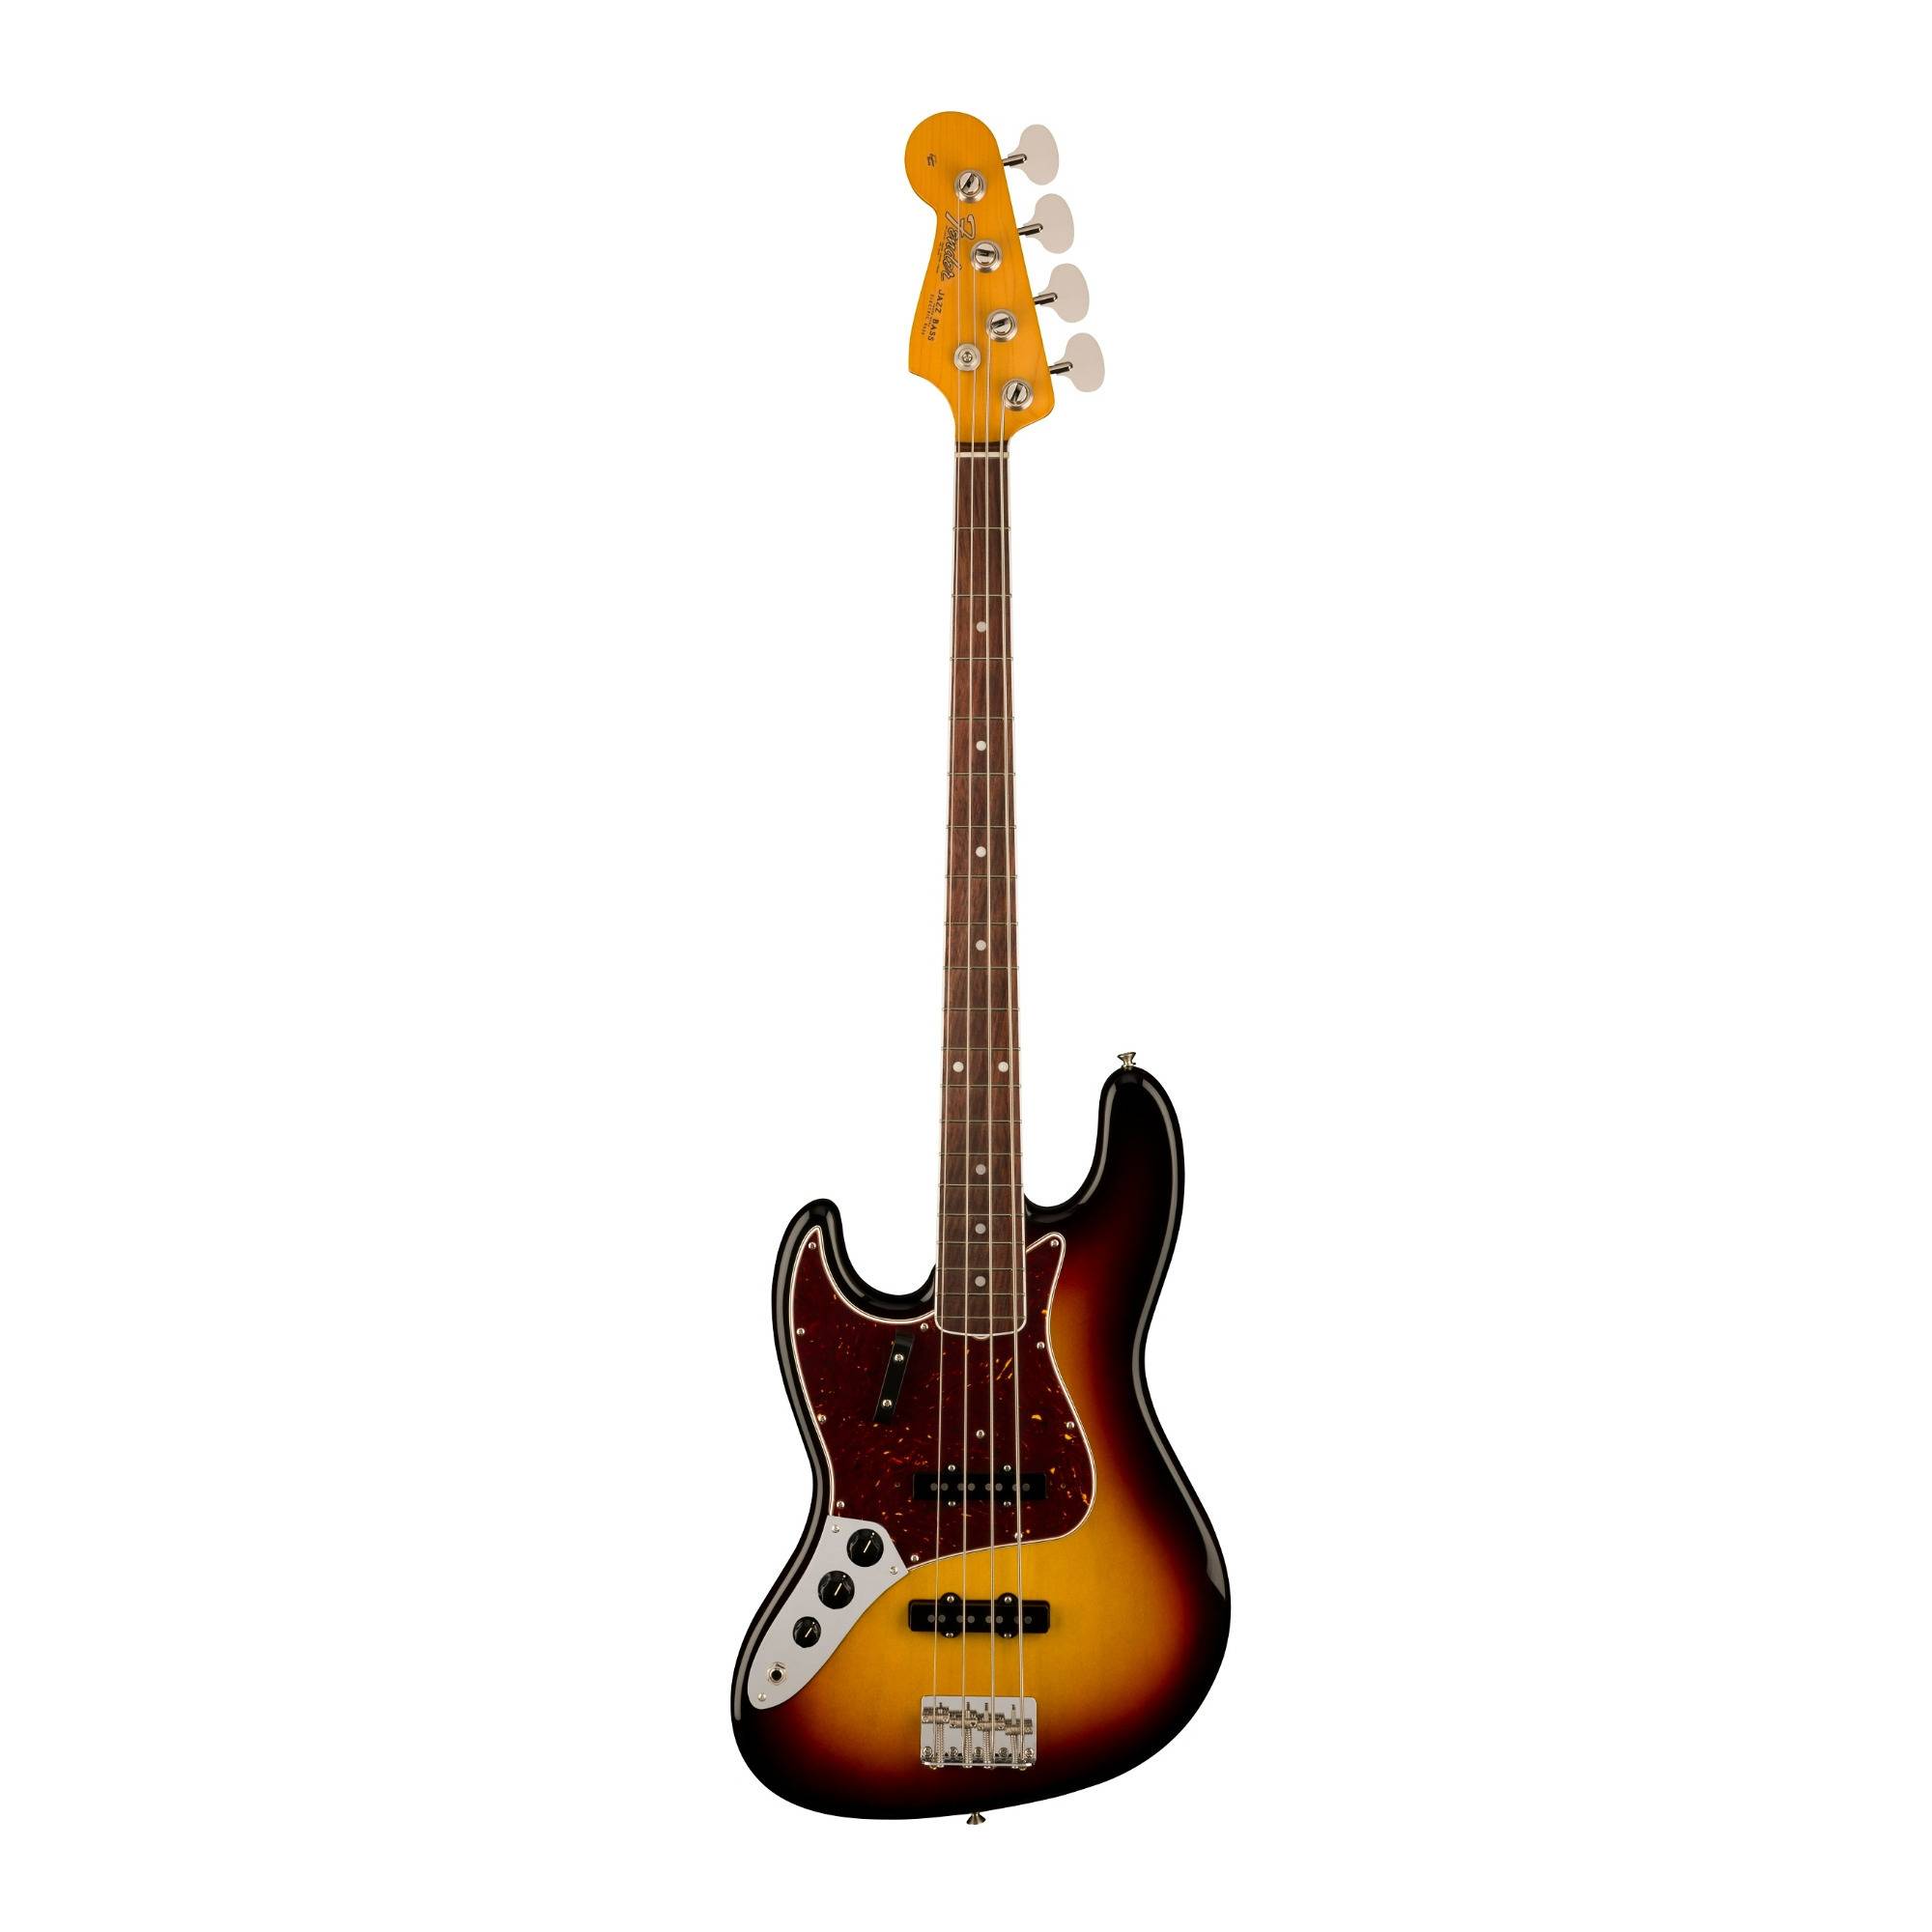 Fender American Vintage II 1966 4-String Jazz Bass Guitar (Left-Handed, 3-Color Sunburst)